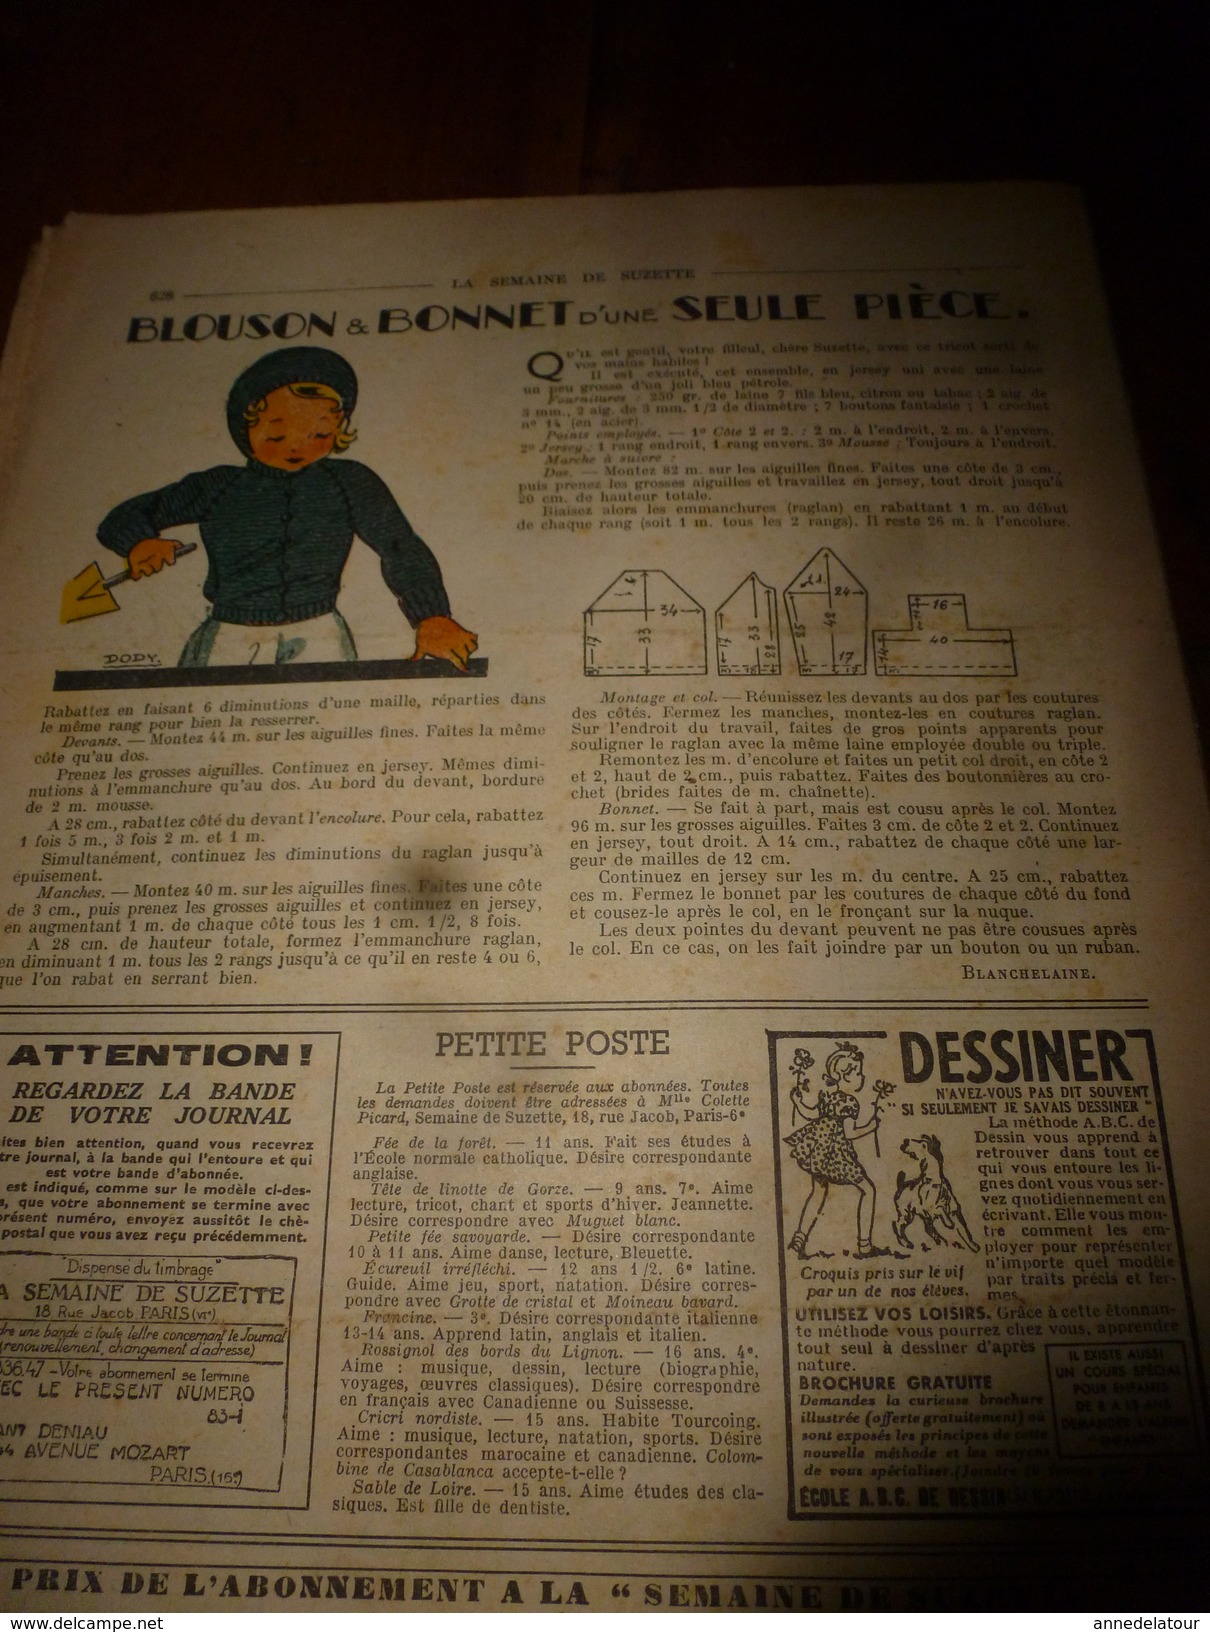 1948 LSDS (La Semaine de Suzette): Comment s'amusaient les enfants royaux ; PRESTIDIGITATION ; etc